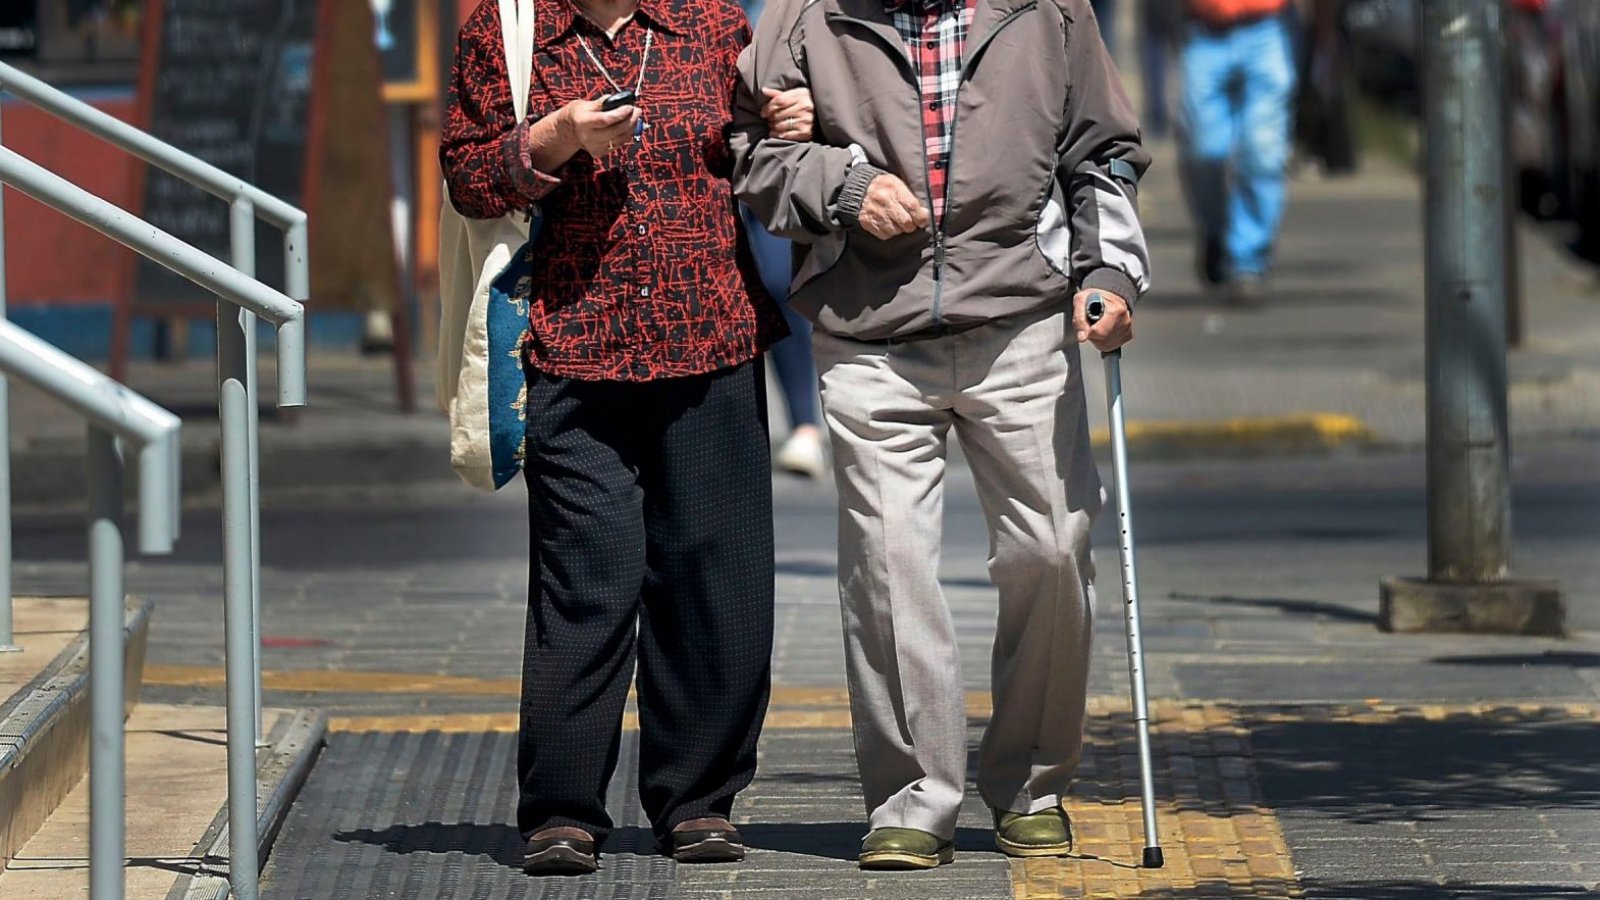 Bonos para adultos mayores: ¿Qué beneficios pueden recibir?